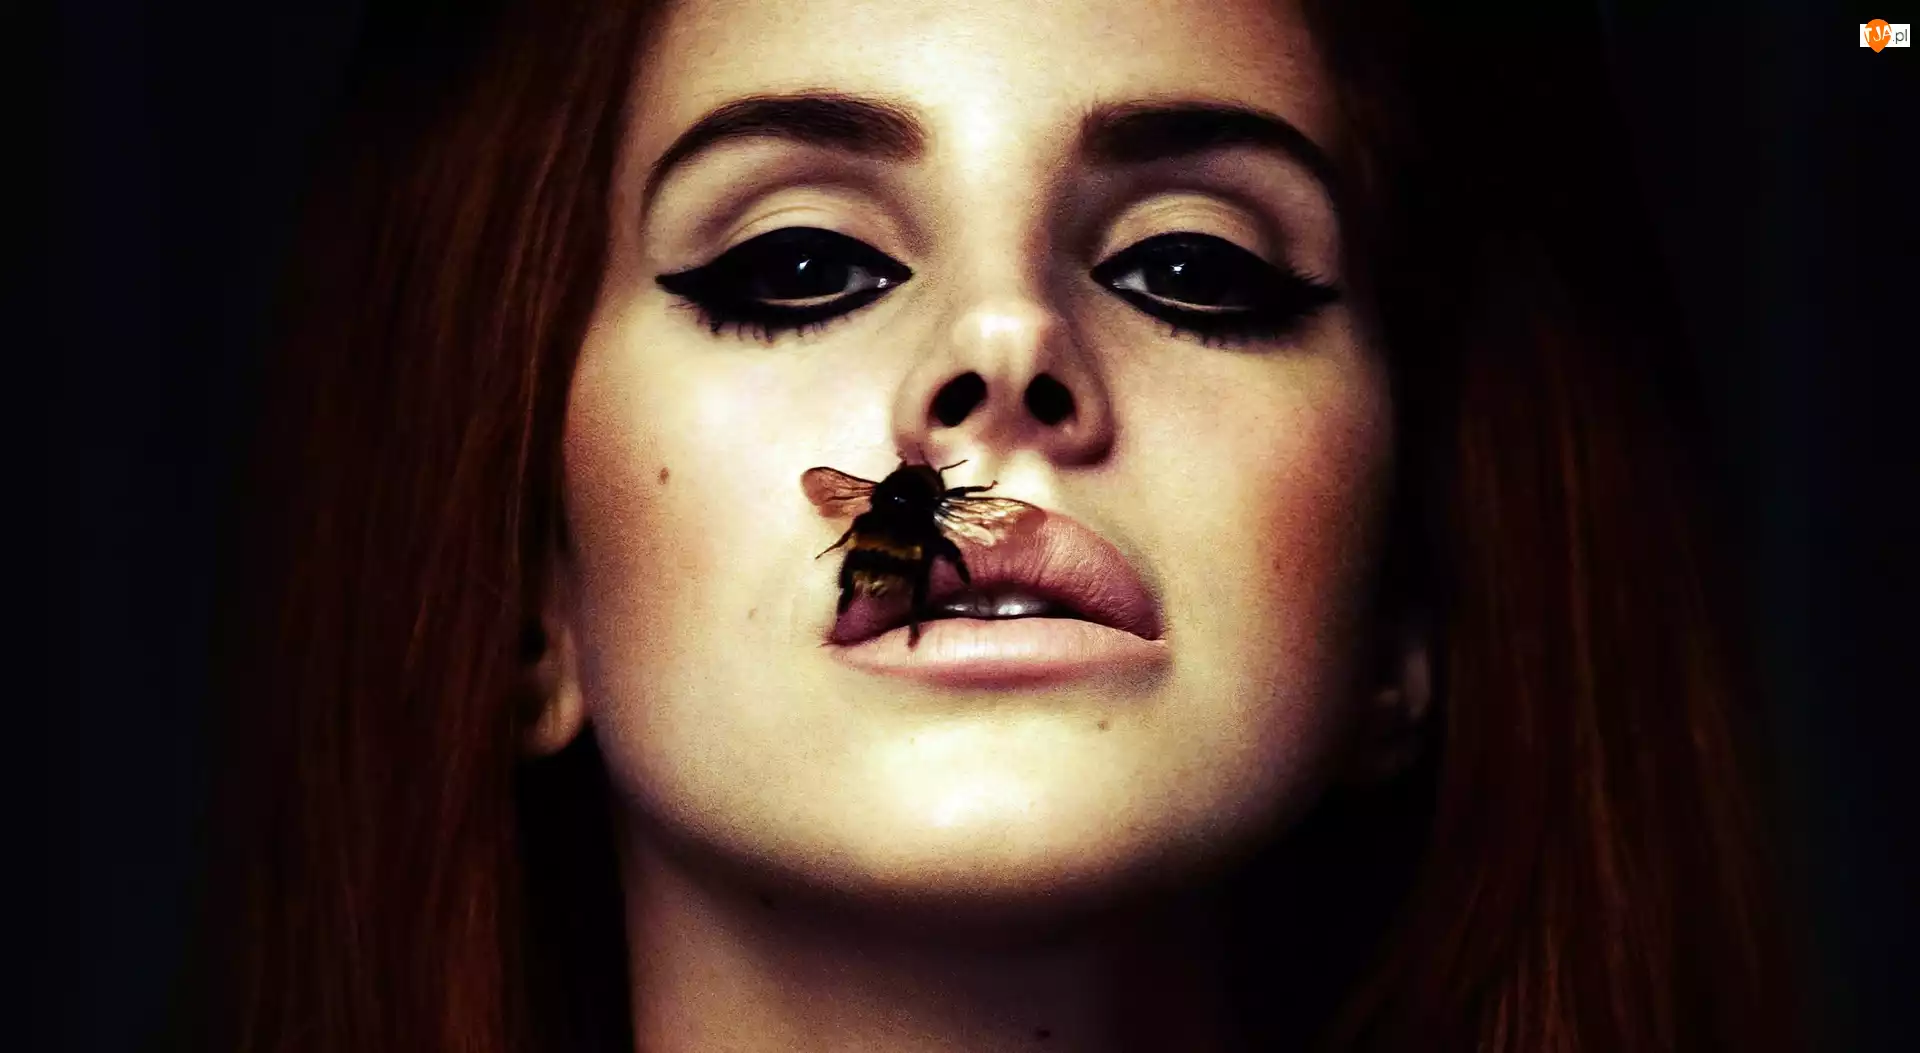 Pszczoła, Lana Del Rey